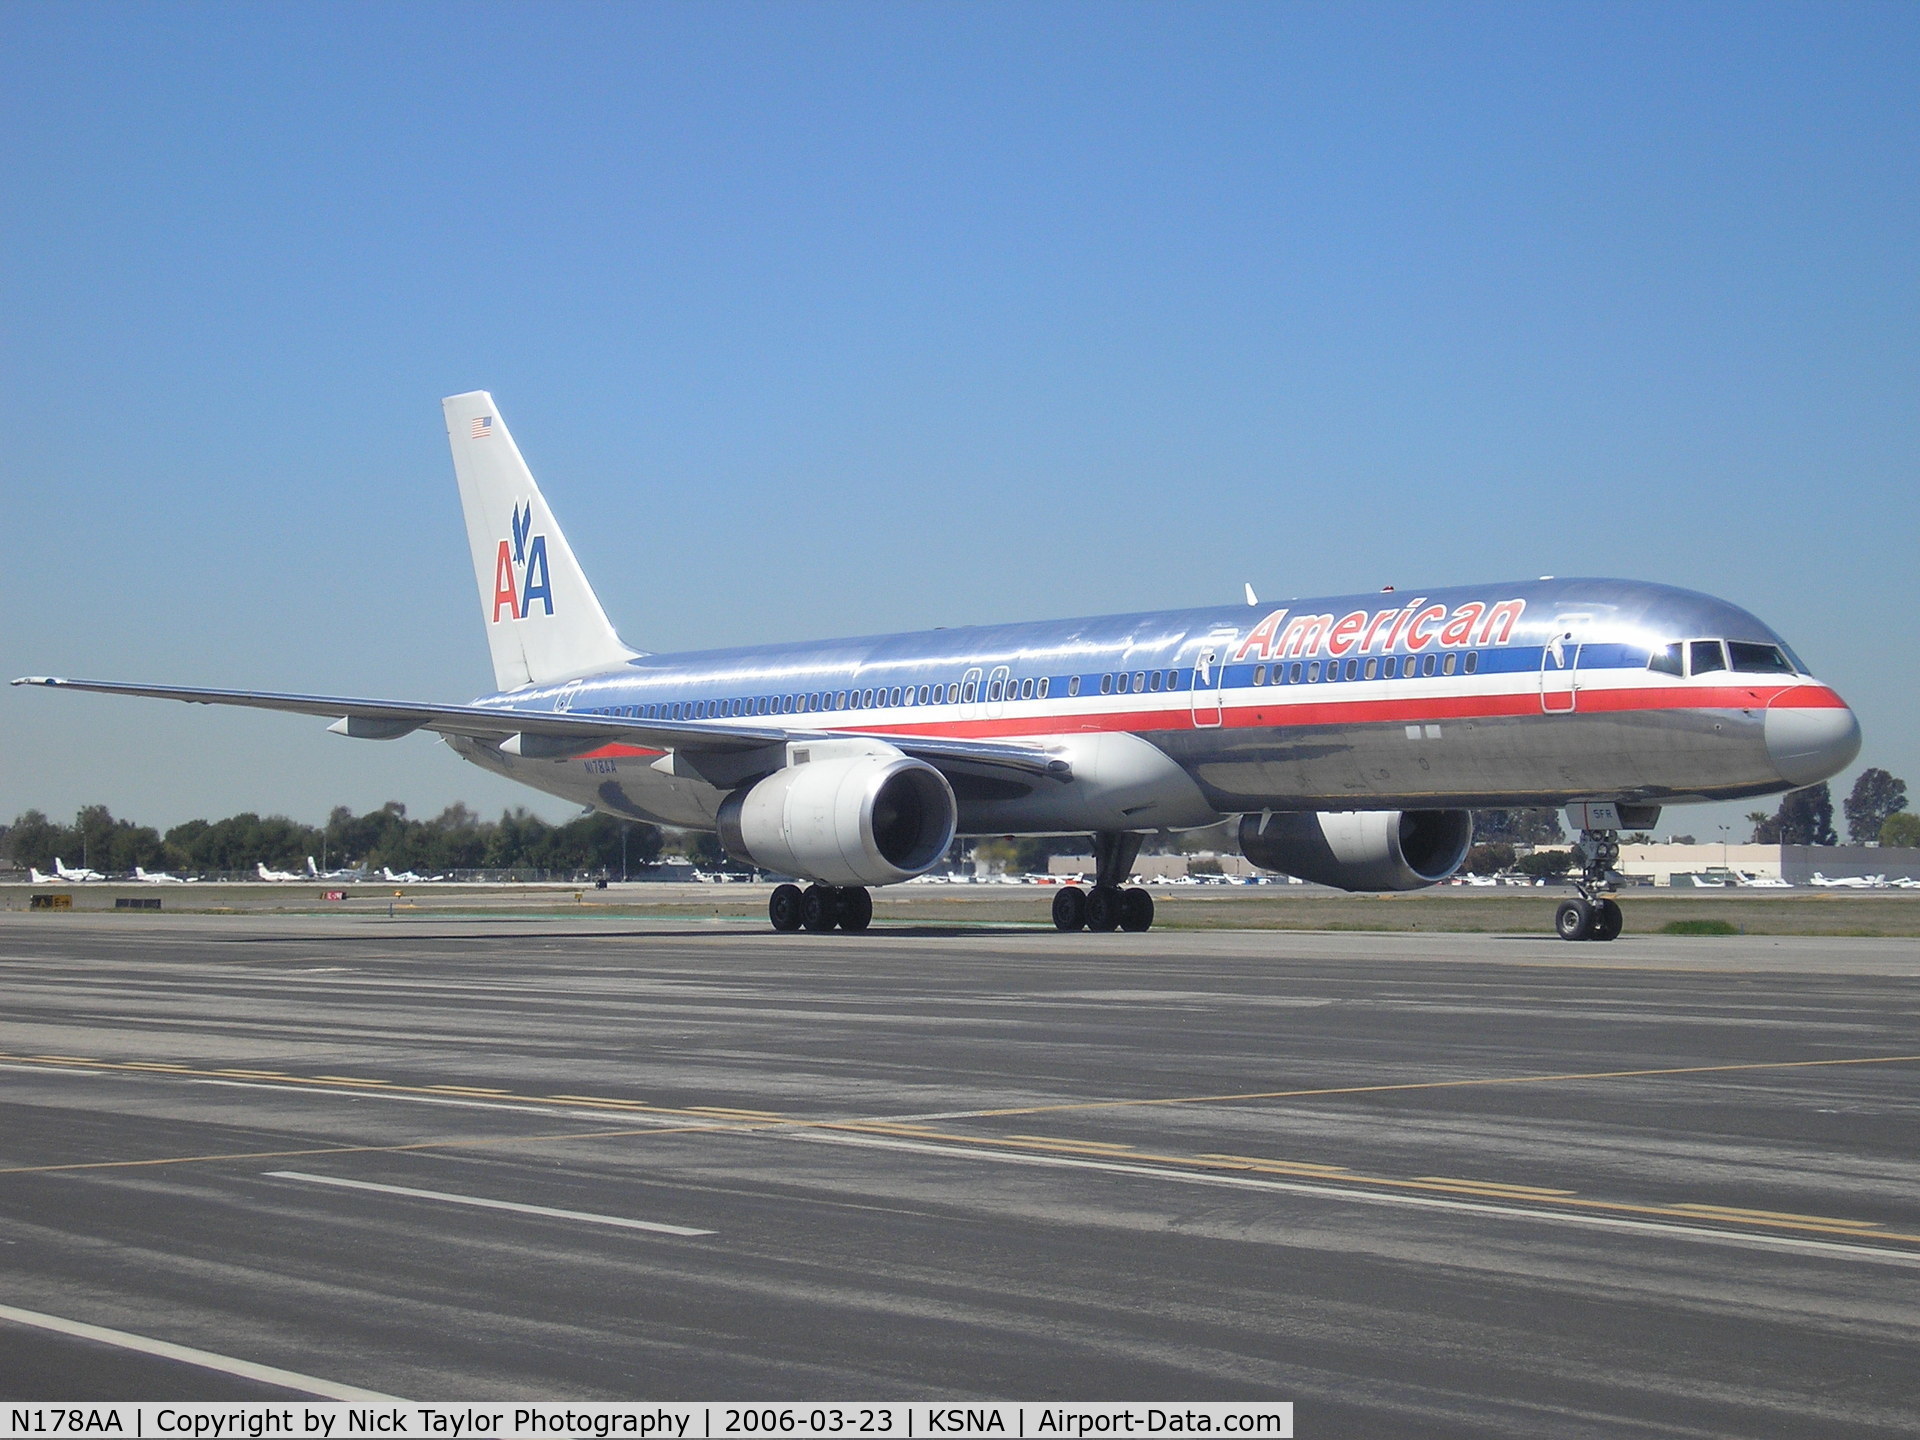 N178AA, 2002 Boeing 757-223 C/N 32398, Taxiing